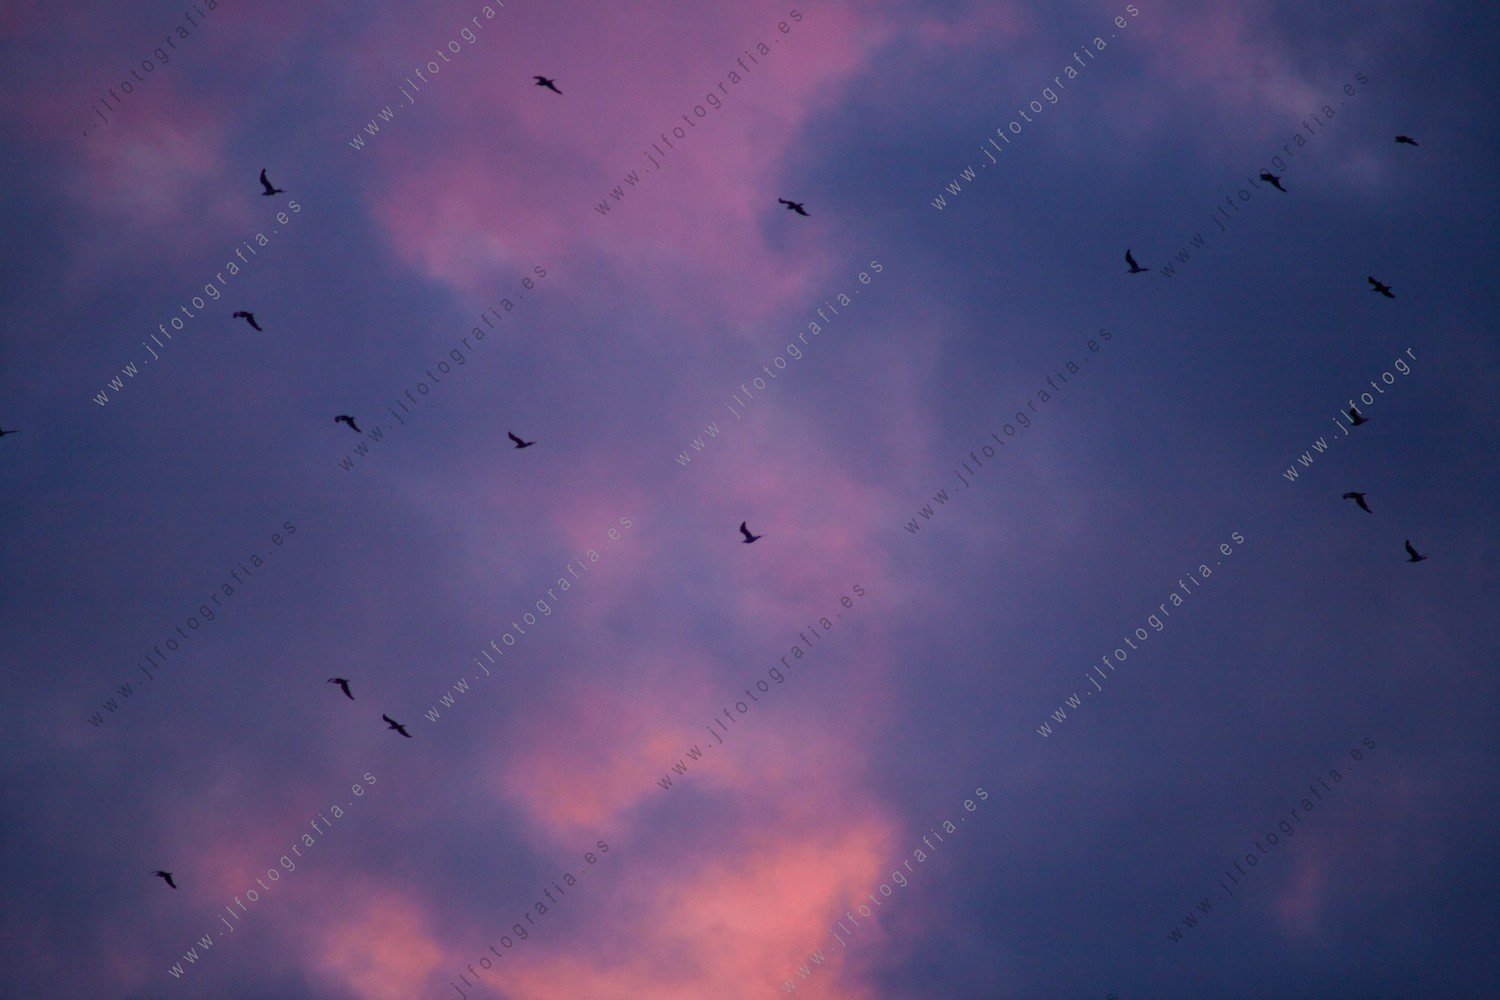 Cielo de crepúsculo con aves surcándolo.